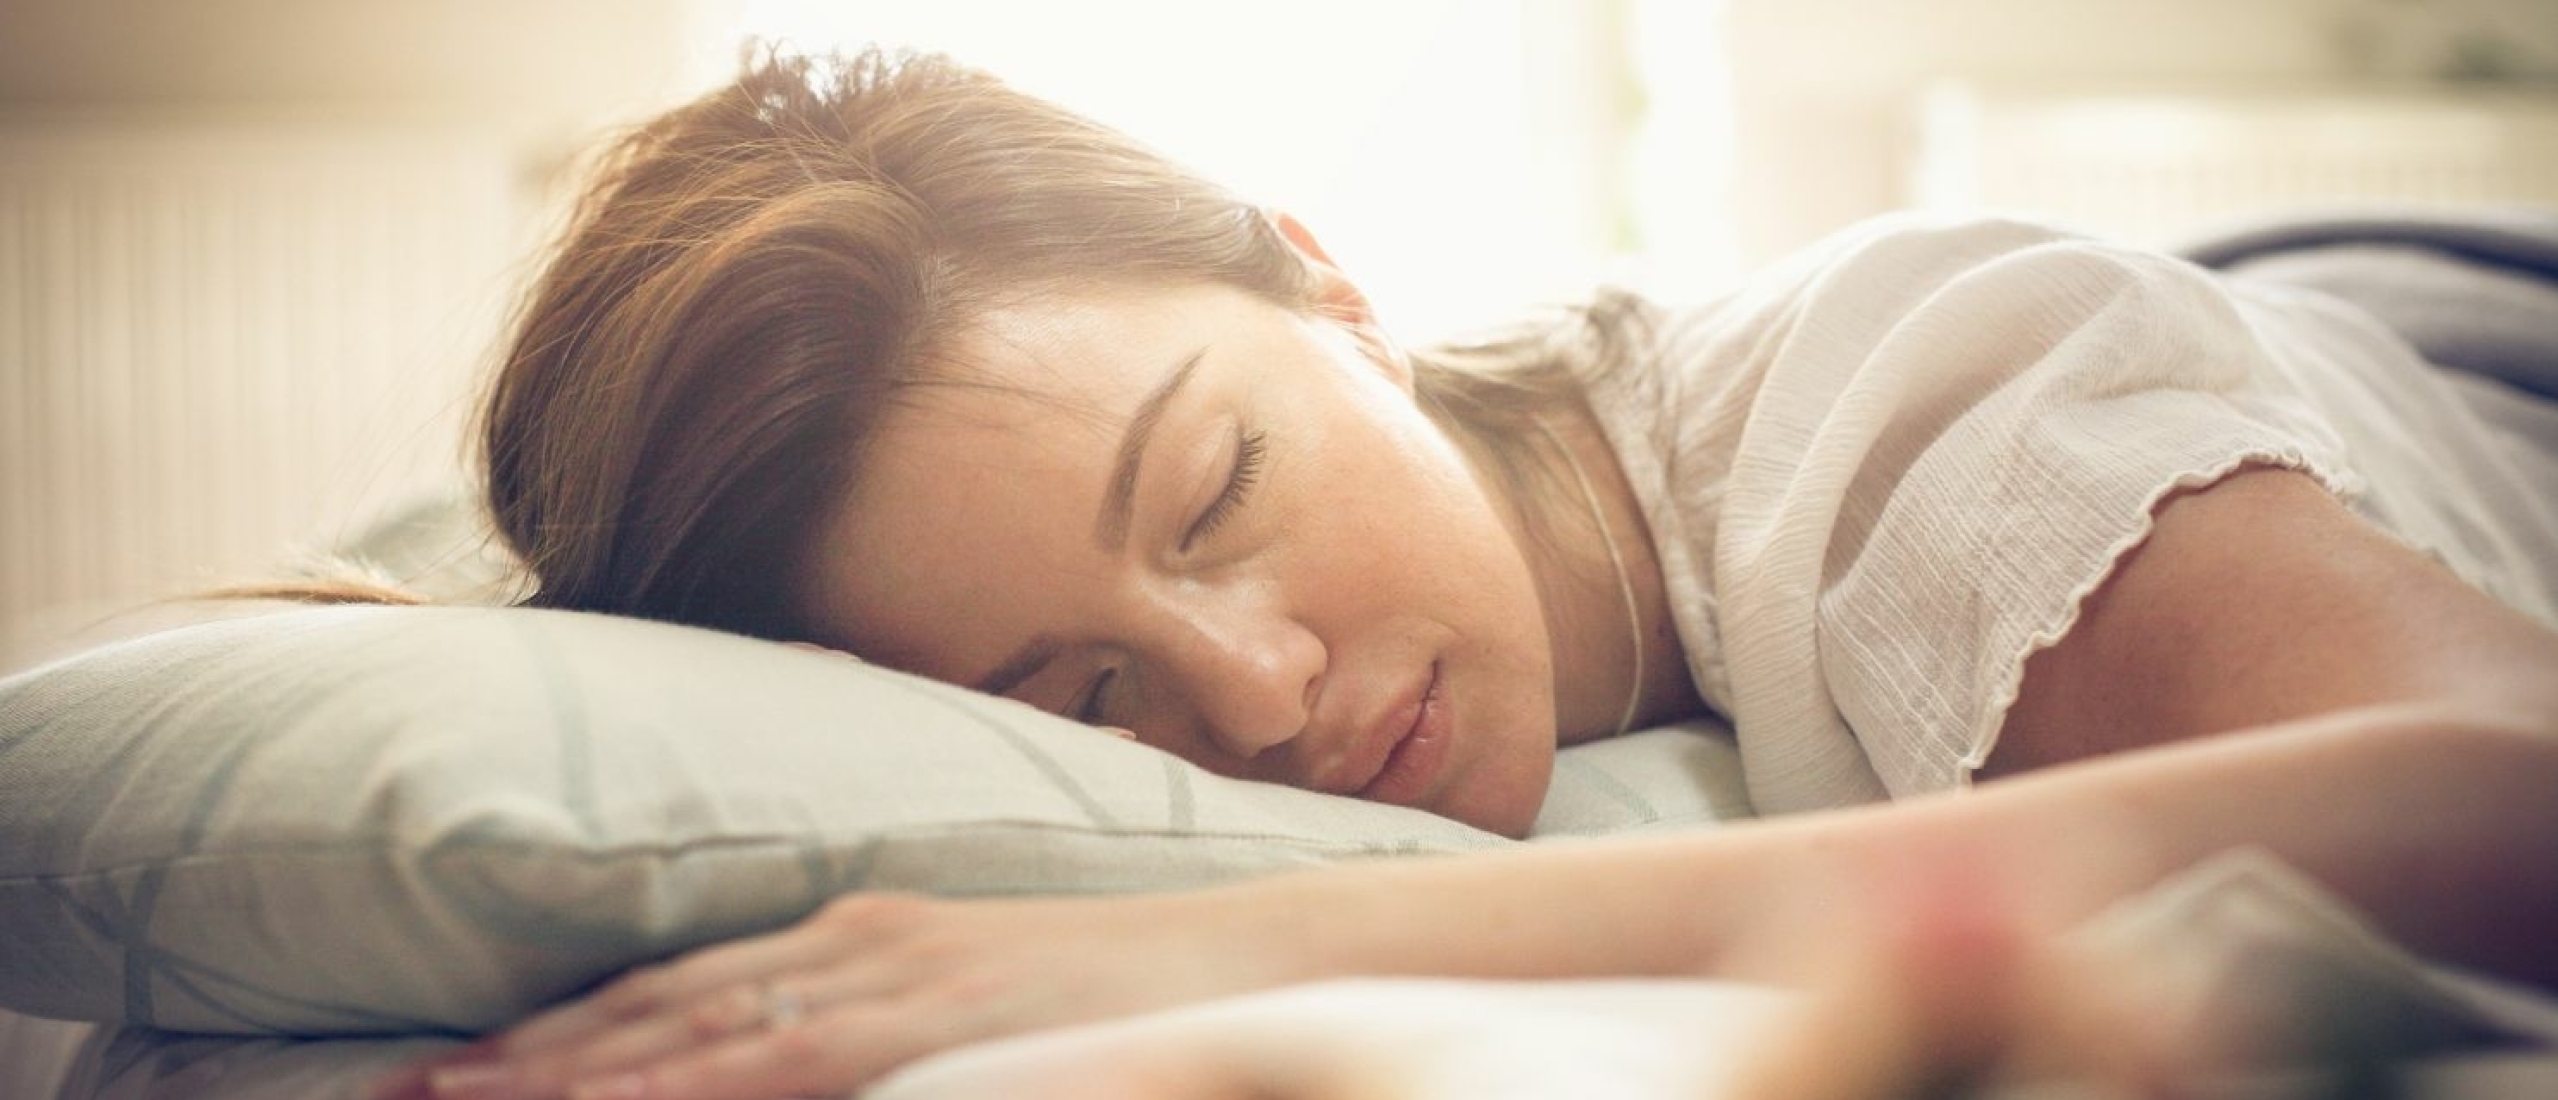 Niet kunnen slapen door onrust? 9 tips voor een ontspannen geest en lichaam